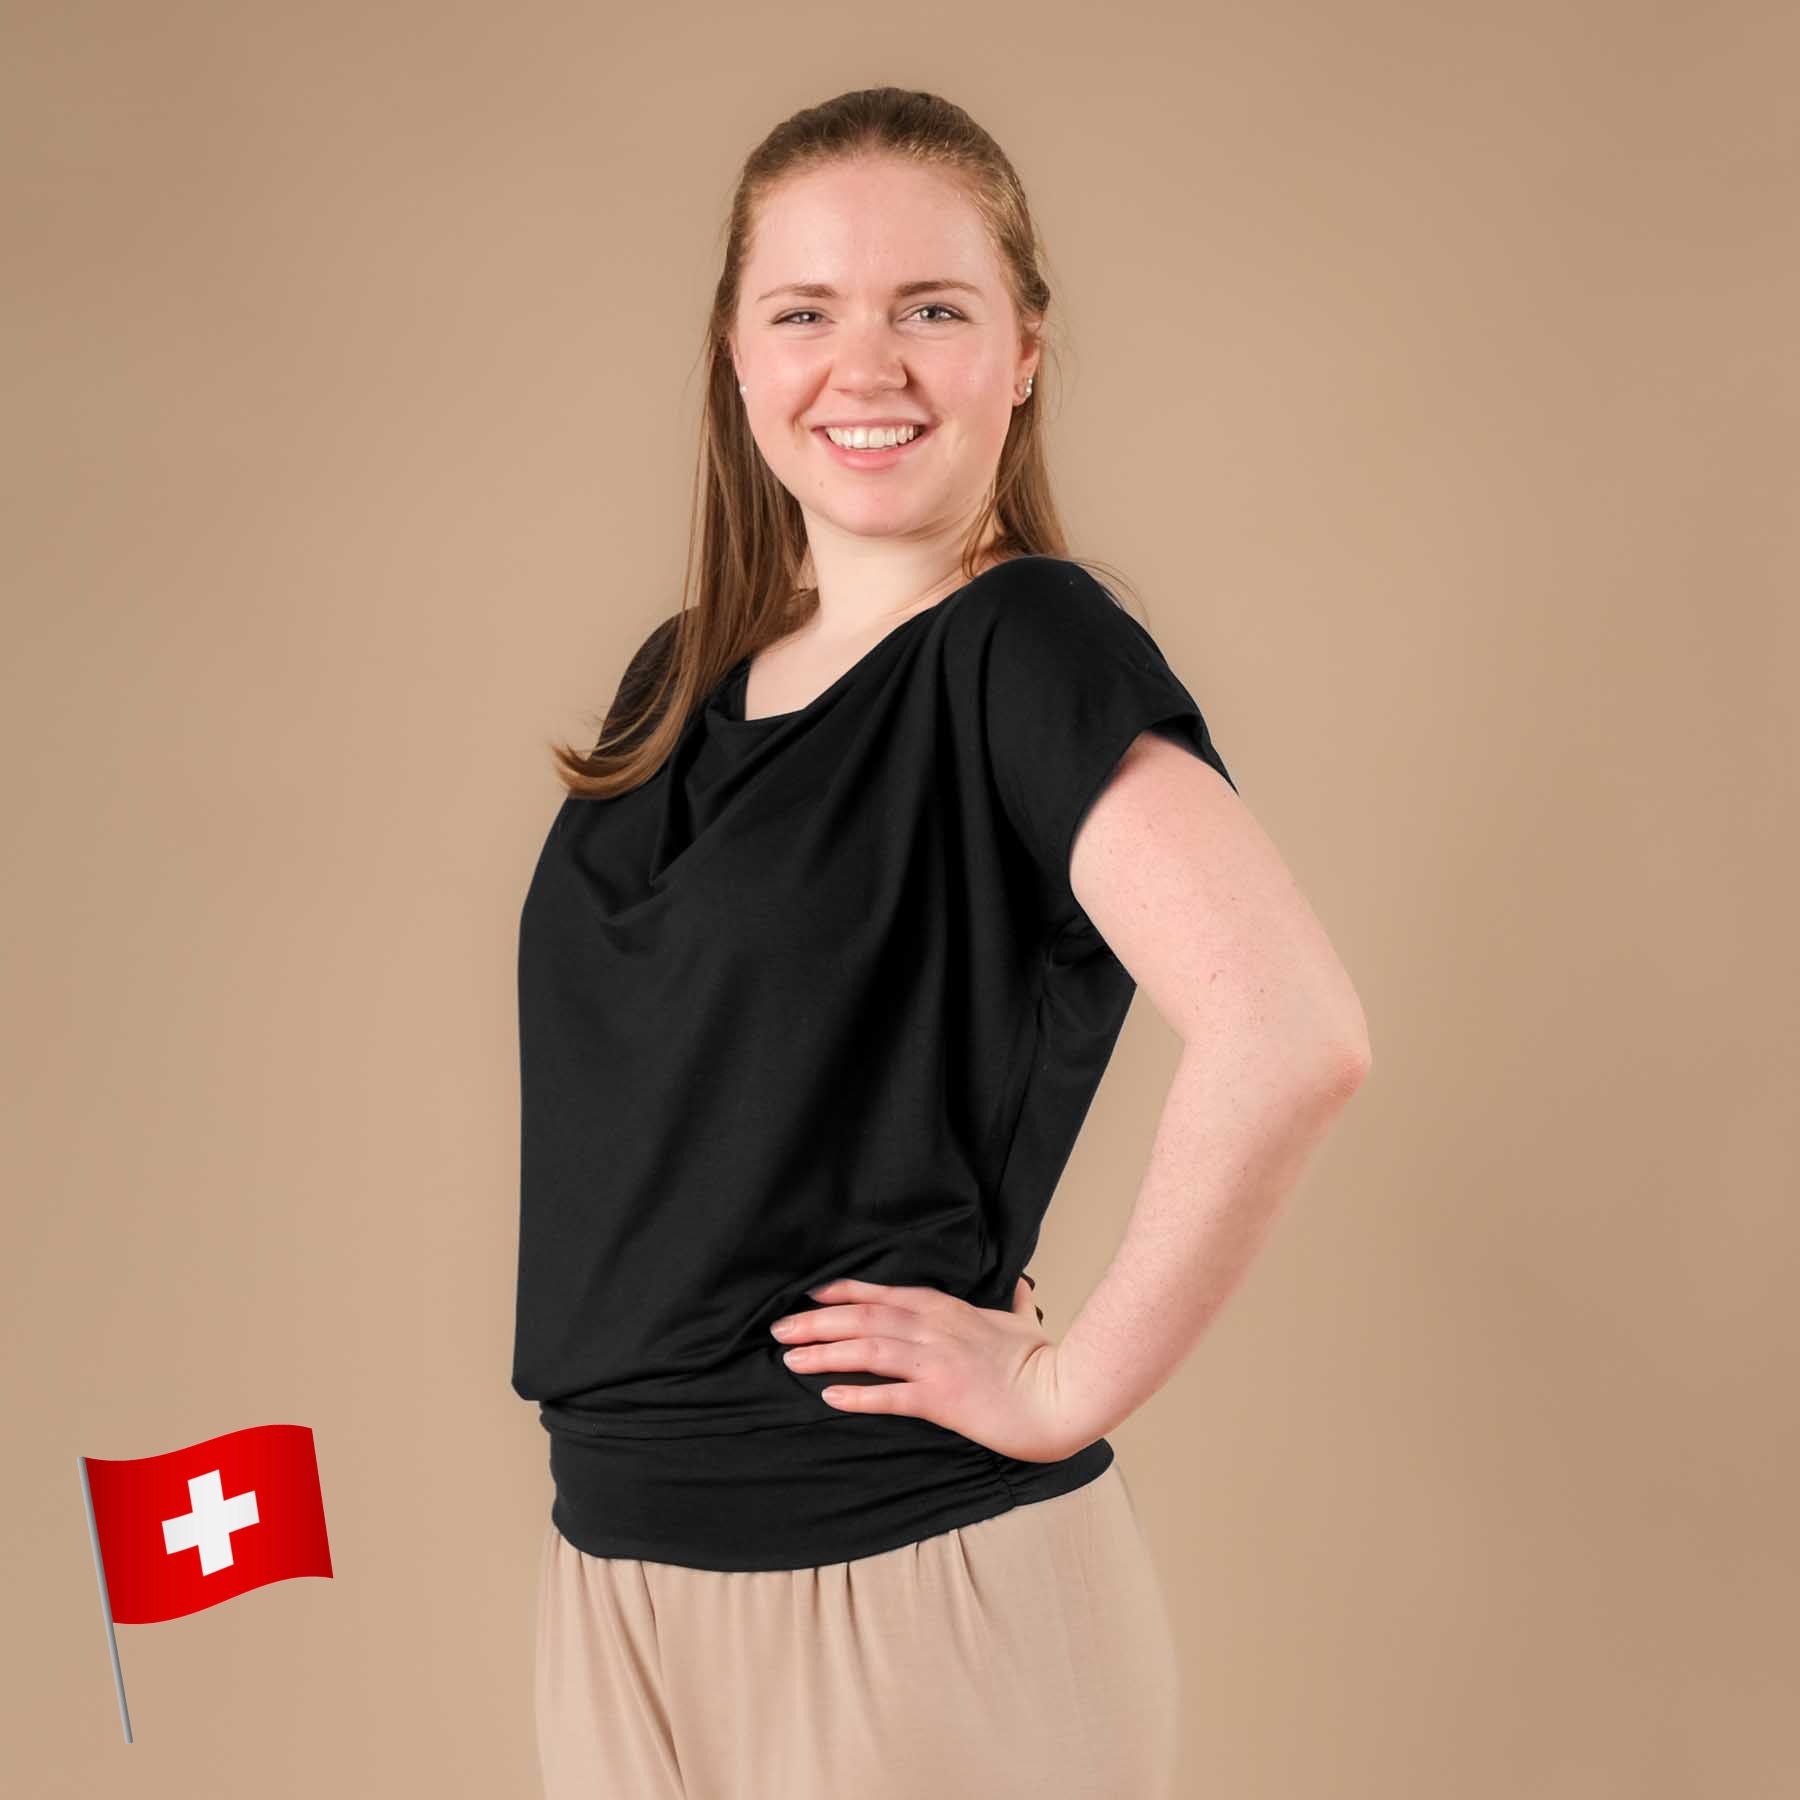 T-shirt de yoga cascade noir, tissu durable, super confortable, cousu en Suisse